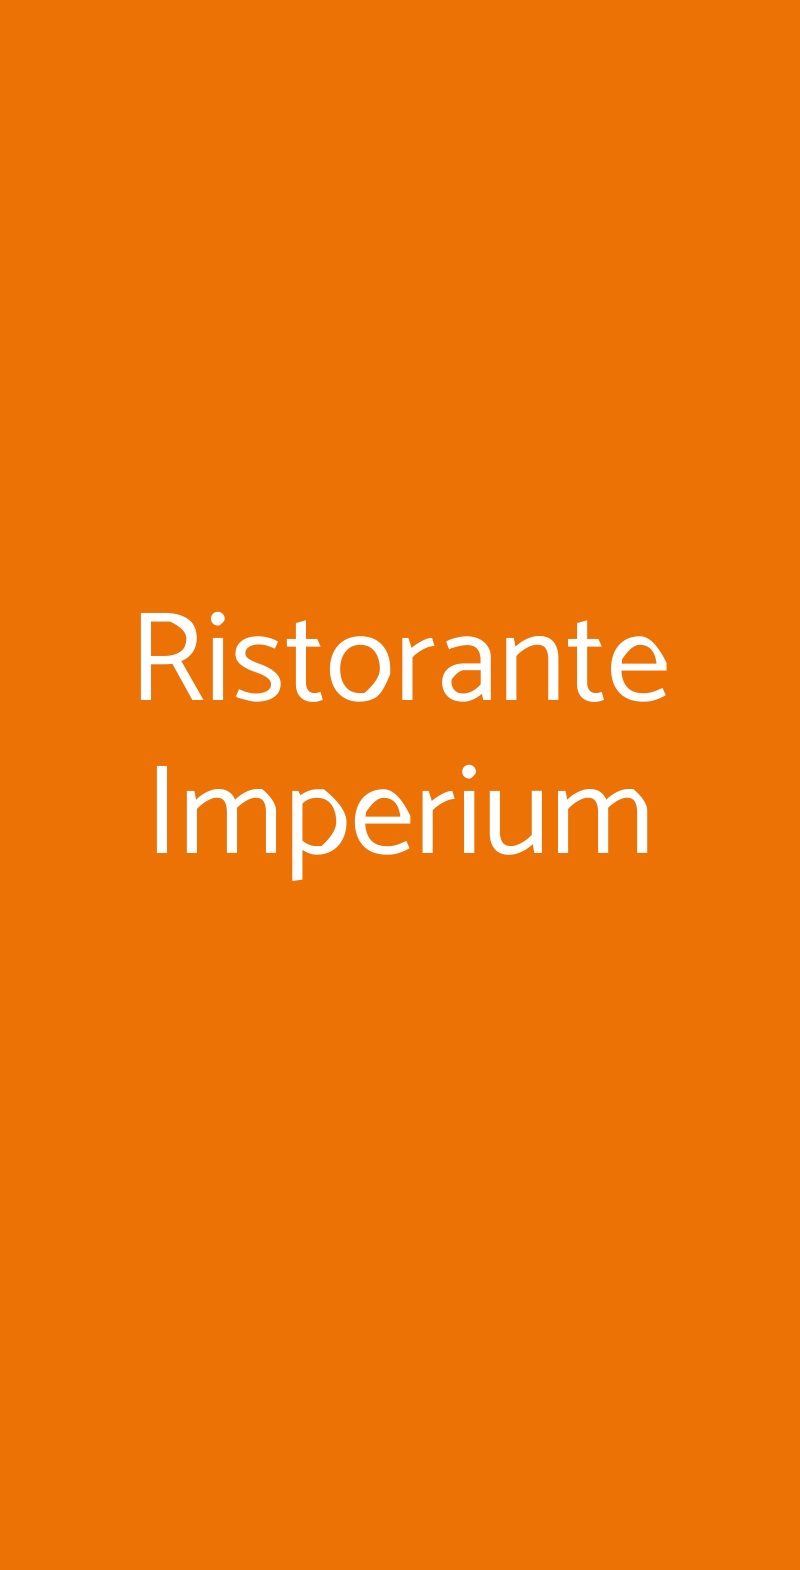 Ristorante Imperium Roma menù 1 pagina